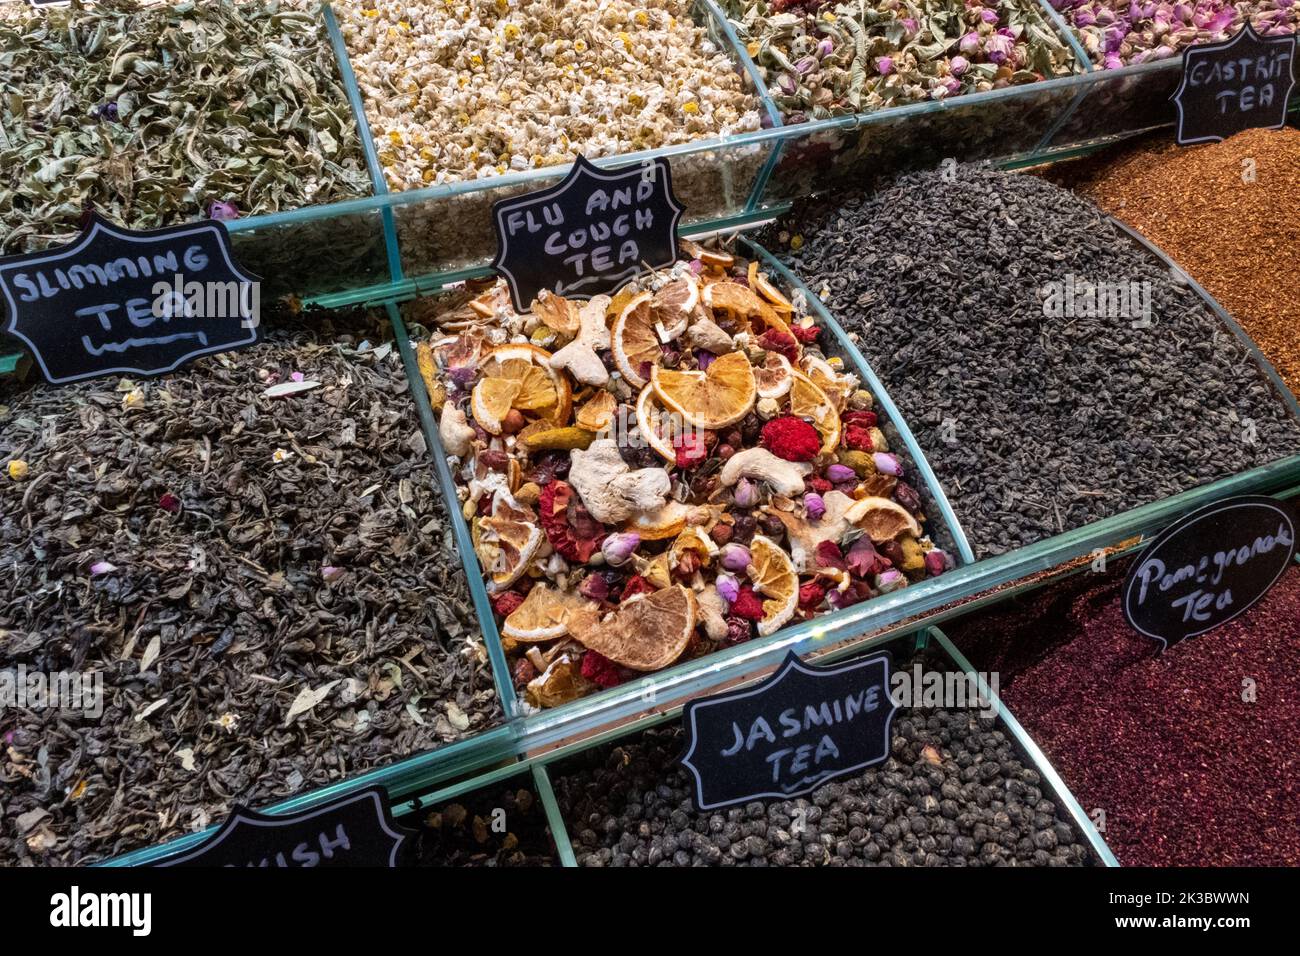 Images de tisanes colorées du bazar de Mısır, thés traditionnels à Istanbul, shopping dans le bazar turc, produits à base de plantes dans les stands de marché d'arcade Banque D'Images